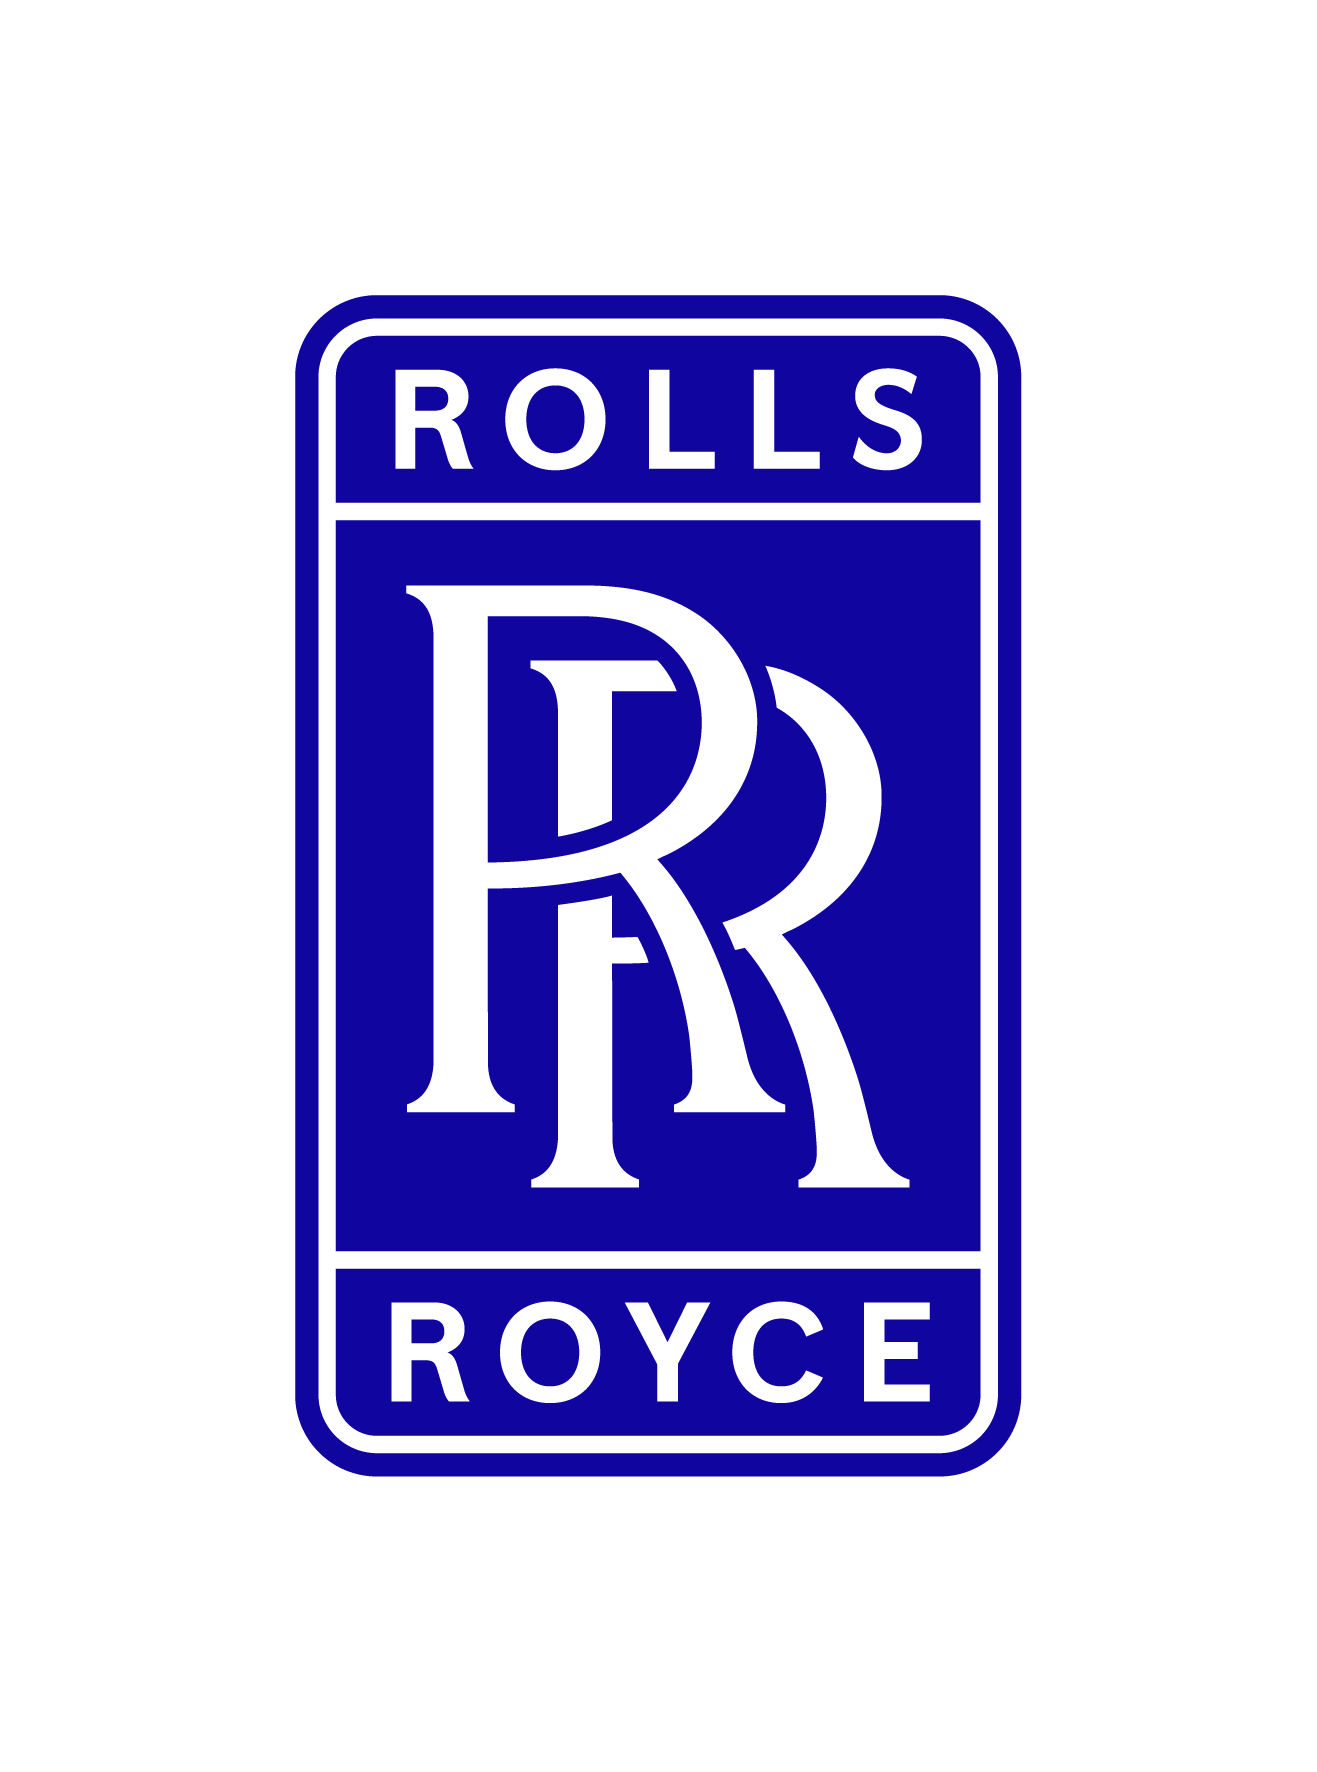 Rolls-Royce logo